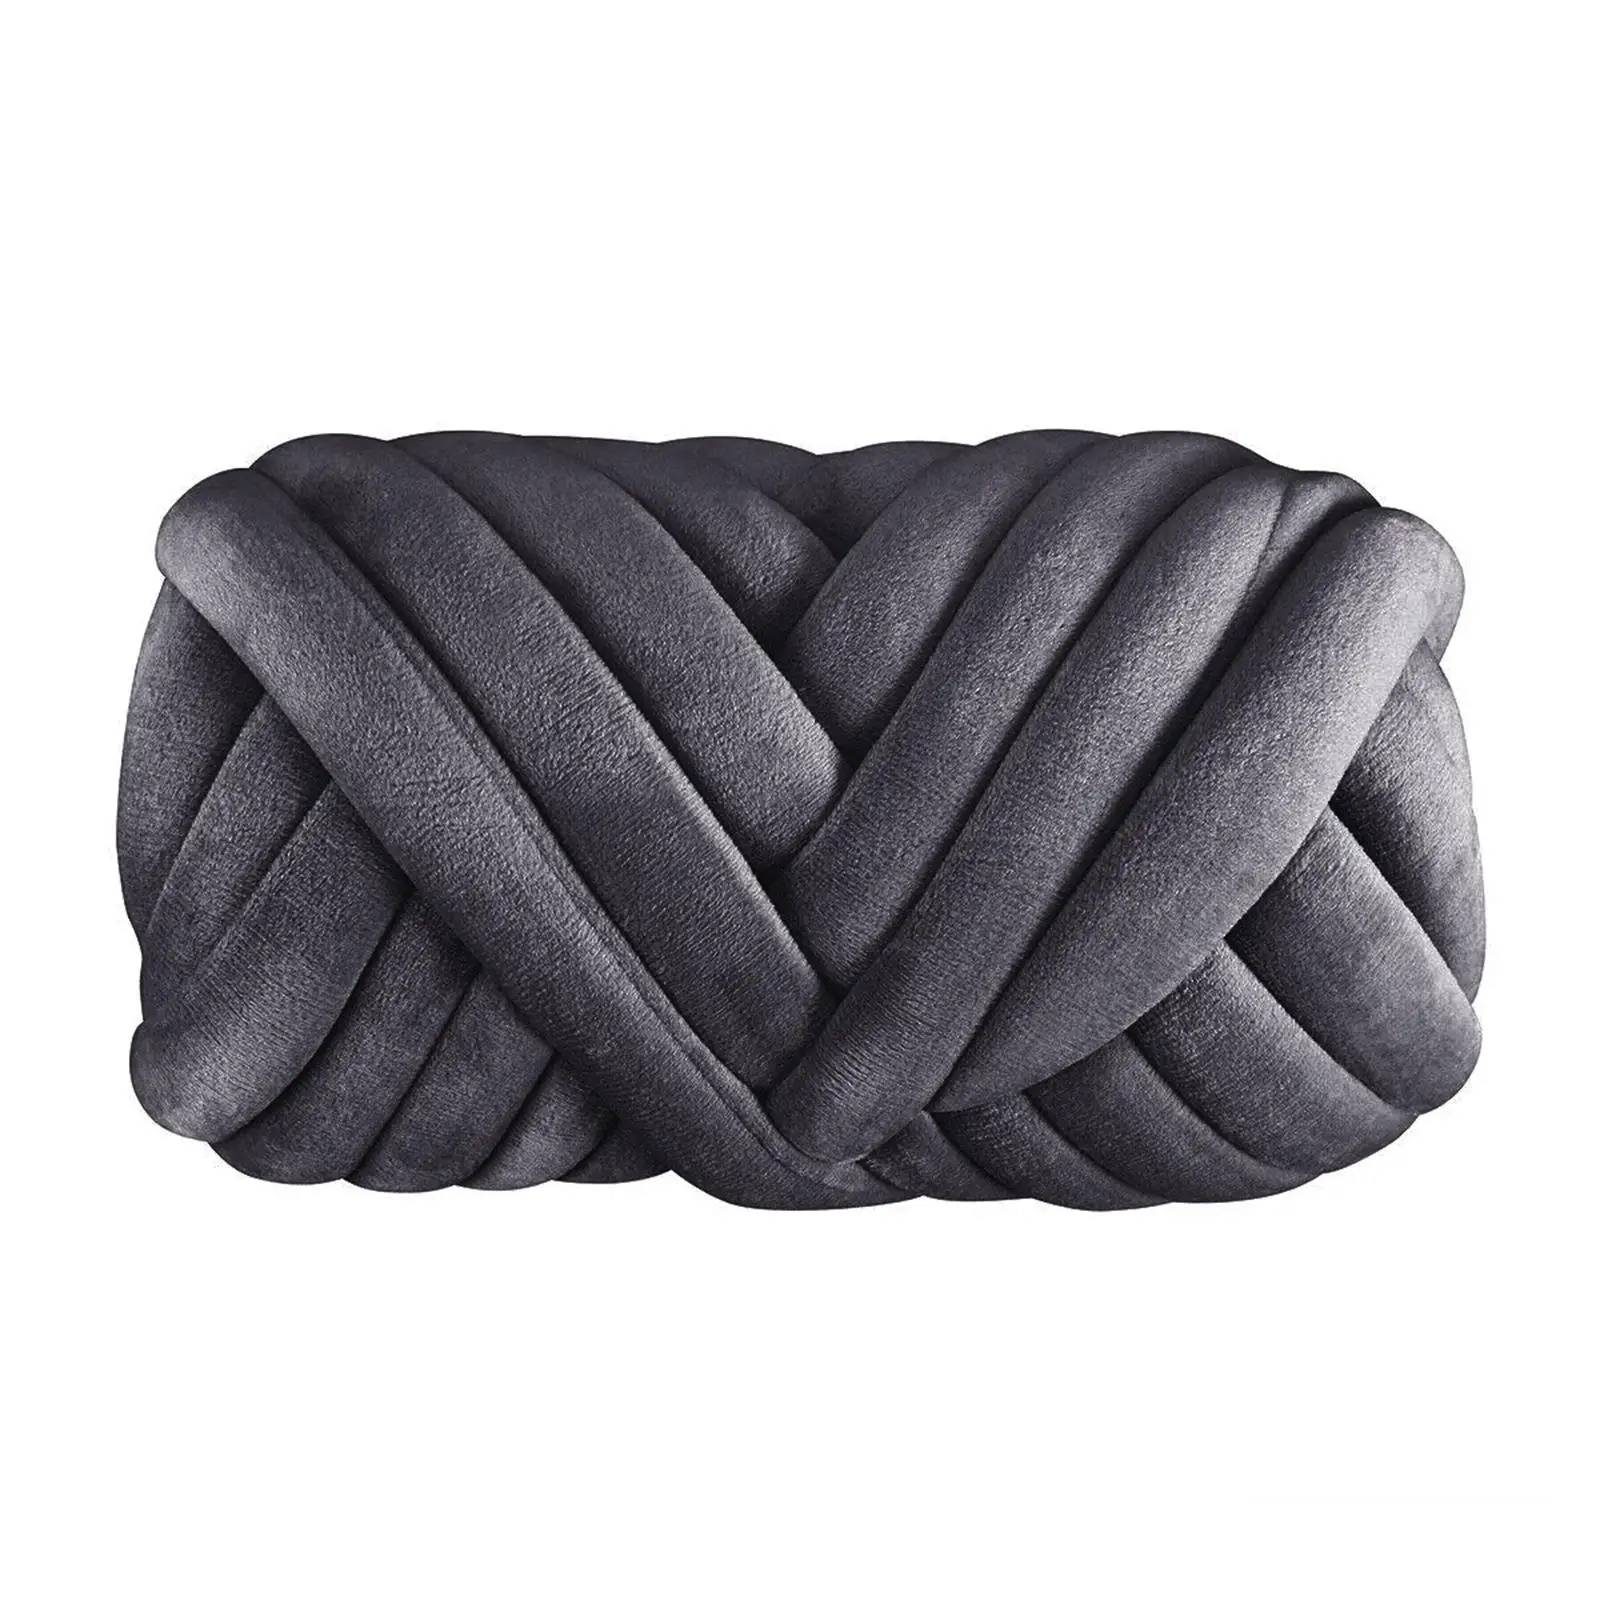 1kg Velvet Chunky Yarn Arm Knitting Cushion Baskets Rug Making Soft Macrame